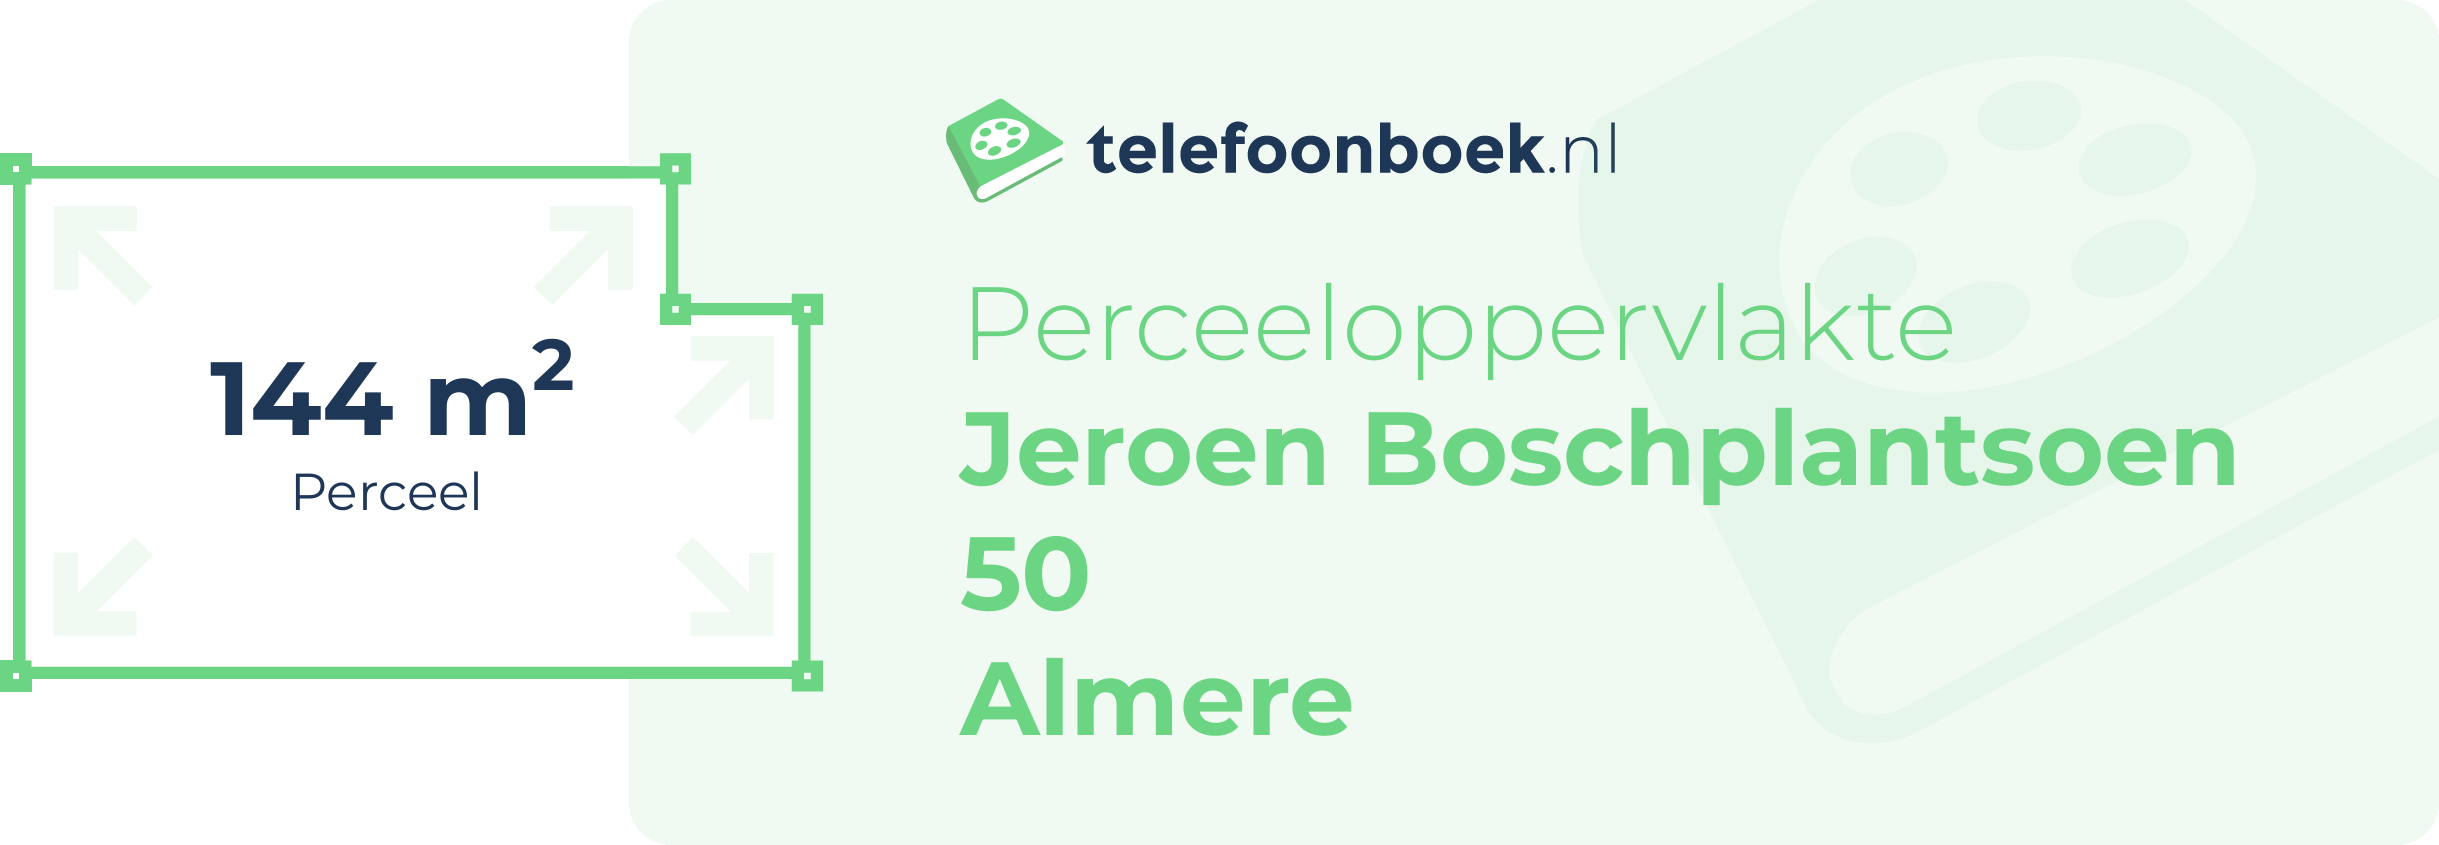 Perceeloppervlakte Jeroen Boschplantsoen 50 Almere